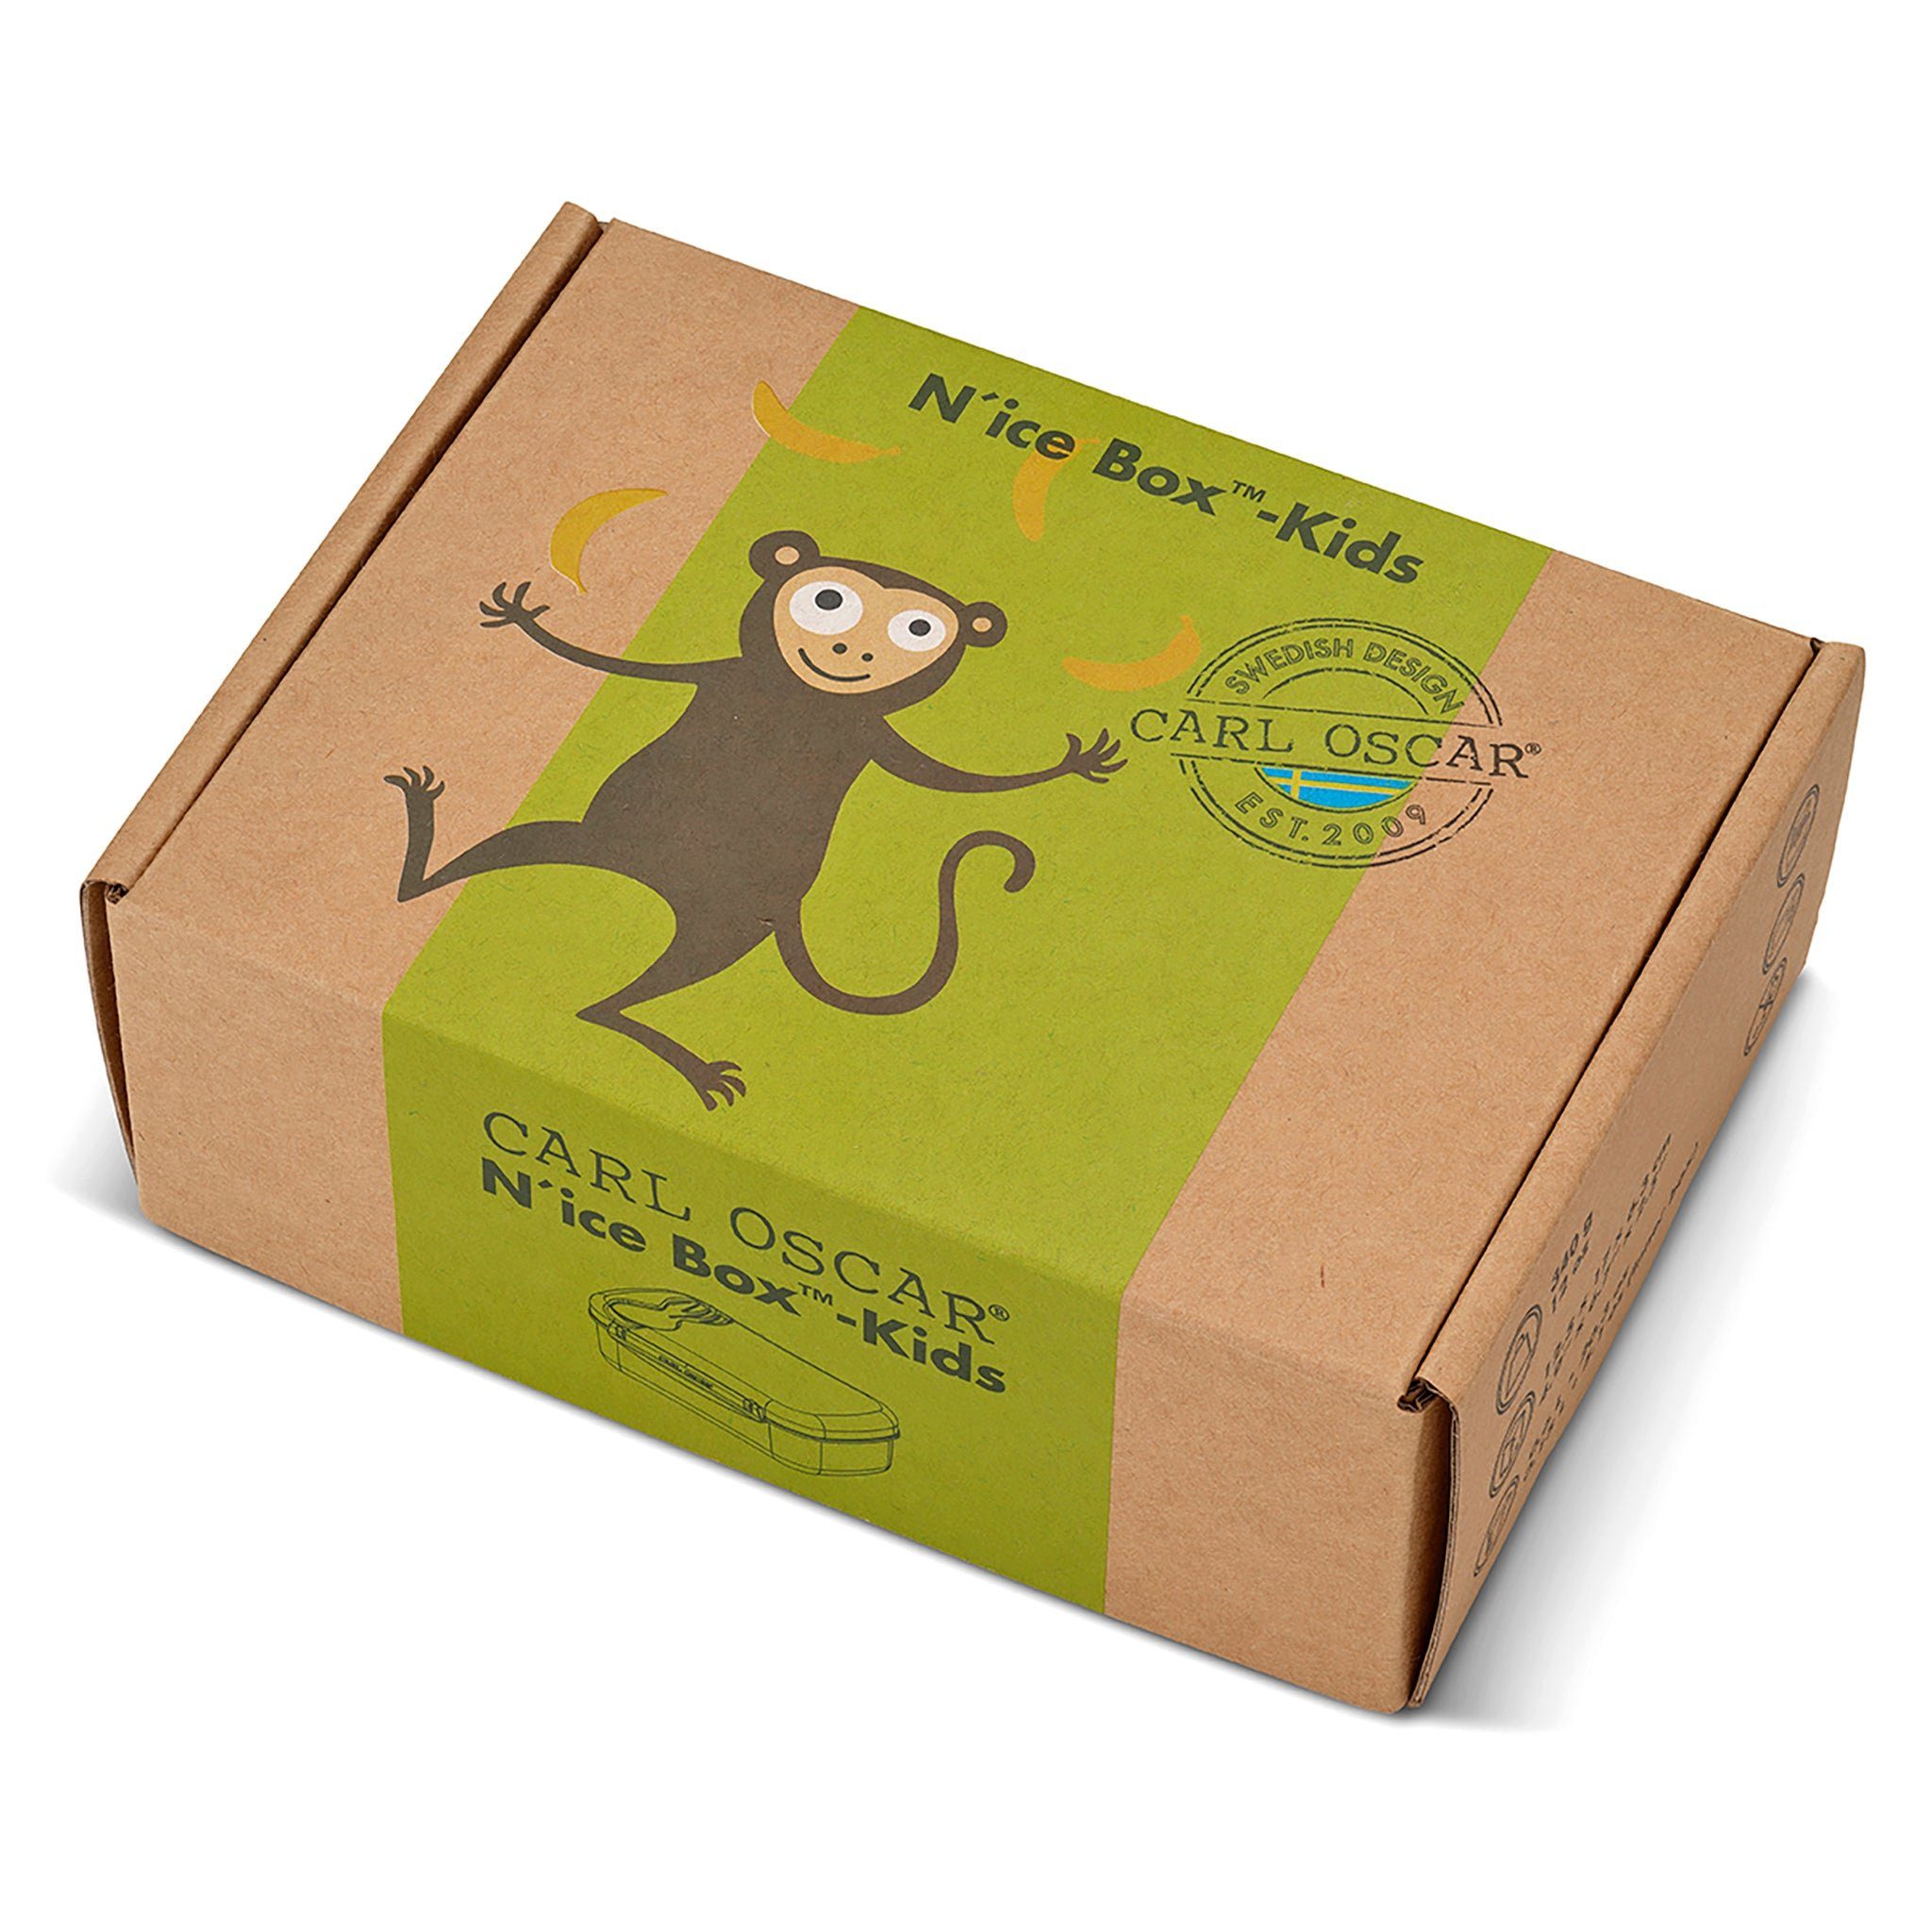 Kinder - Box™ Oscar box Lunchbox Limette Carl Carl lunch Oscar N'ice